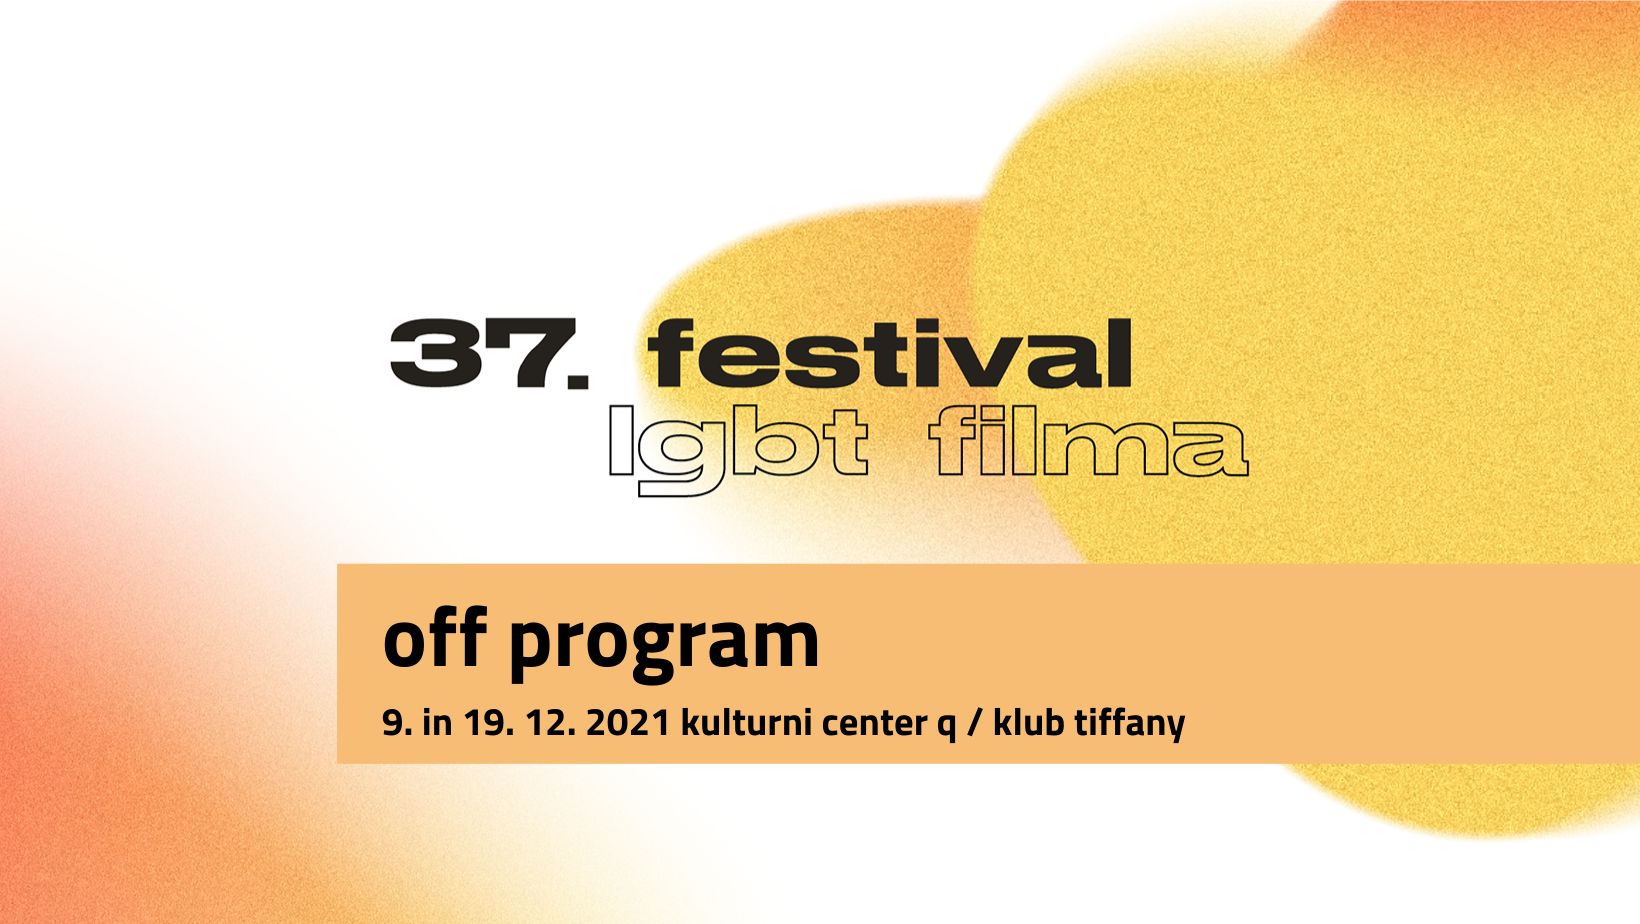 Off program 37. festival LGBT filma